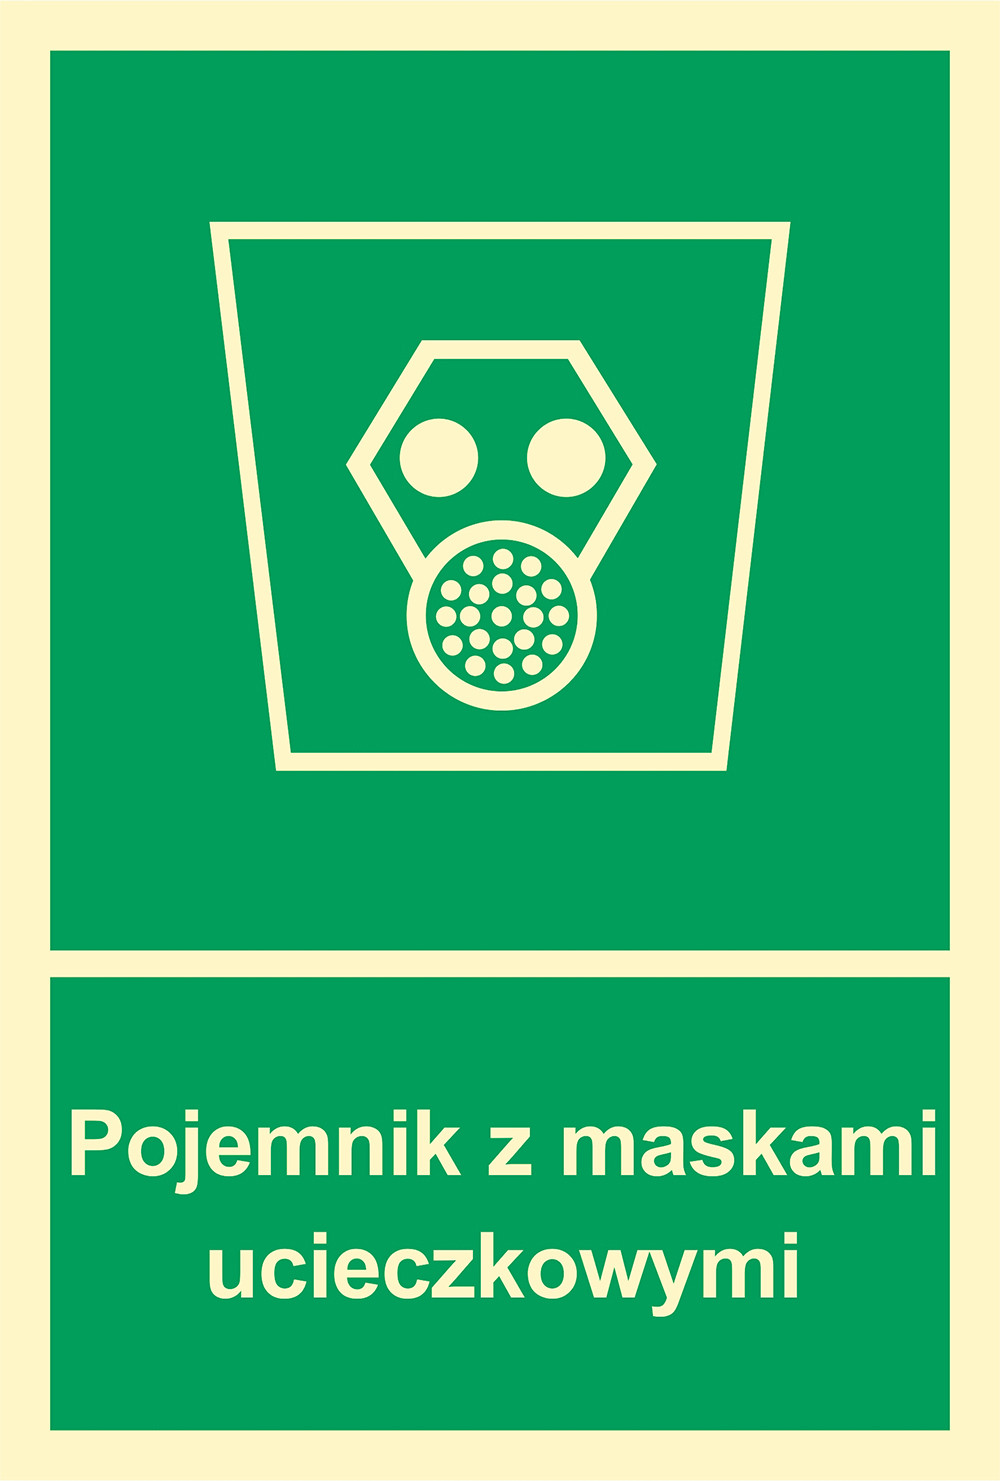 Znak - Pojemnik z maskami ucieczkowymi AB003